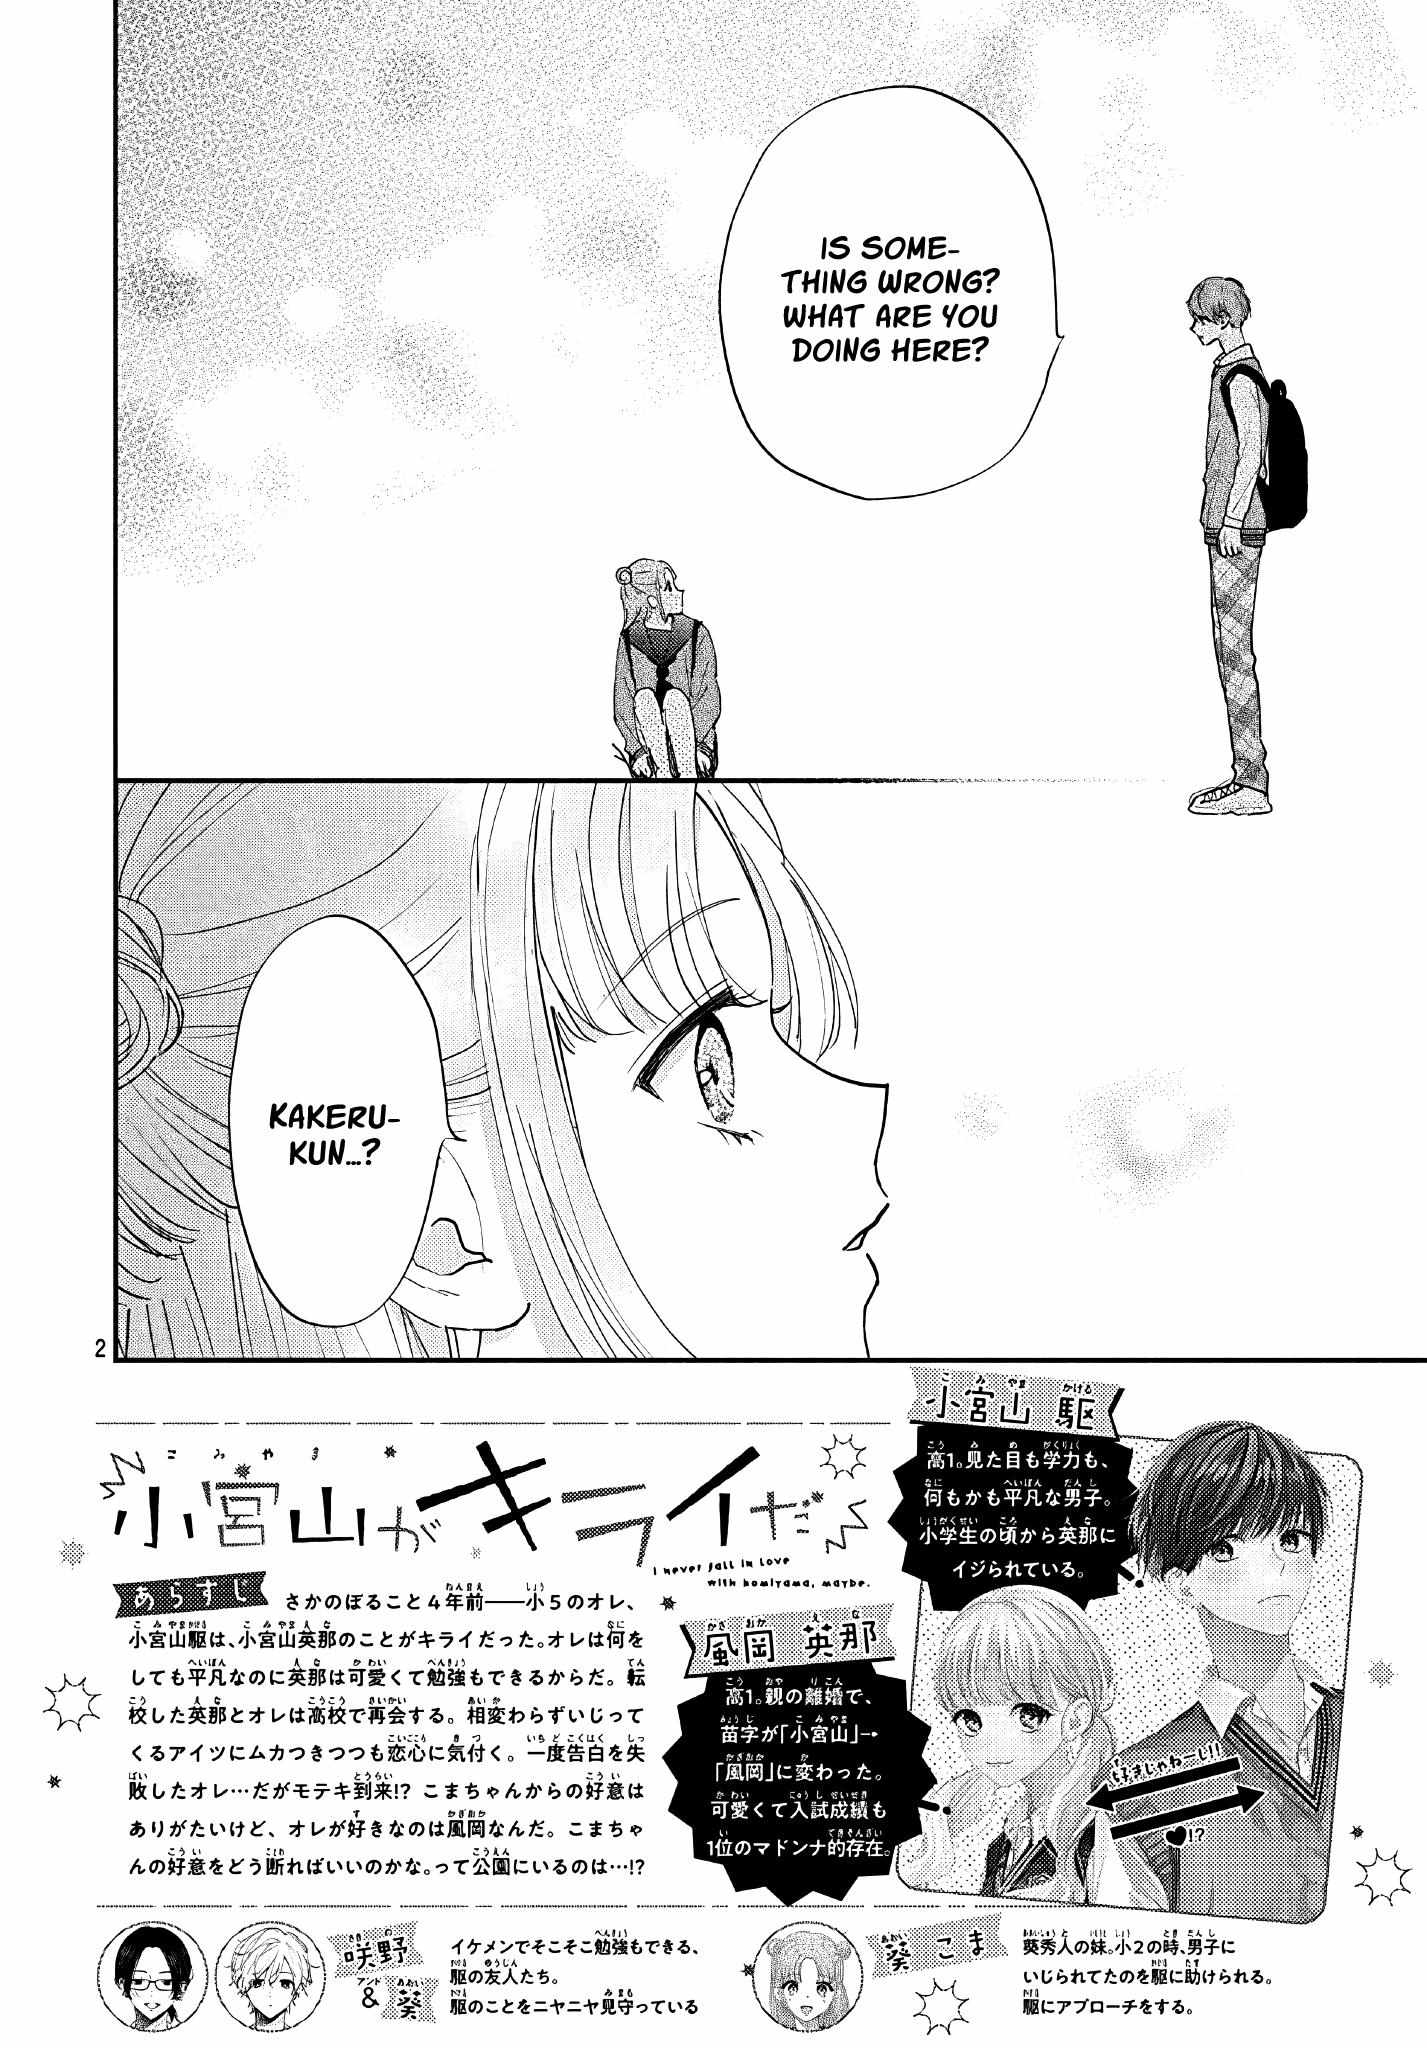 I Hate Komiyama - 11 page 3-e49ebb1e